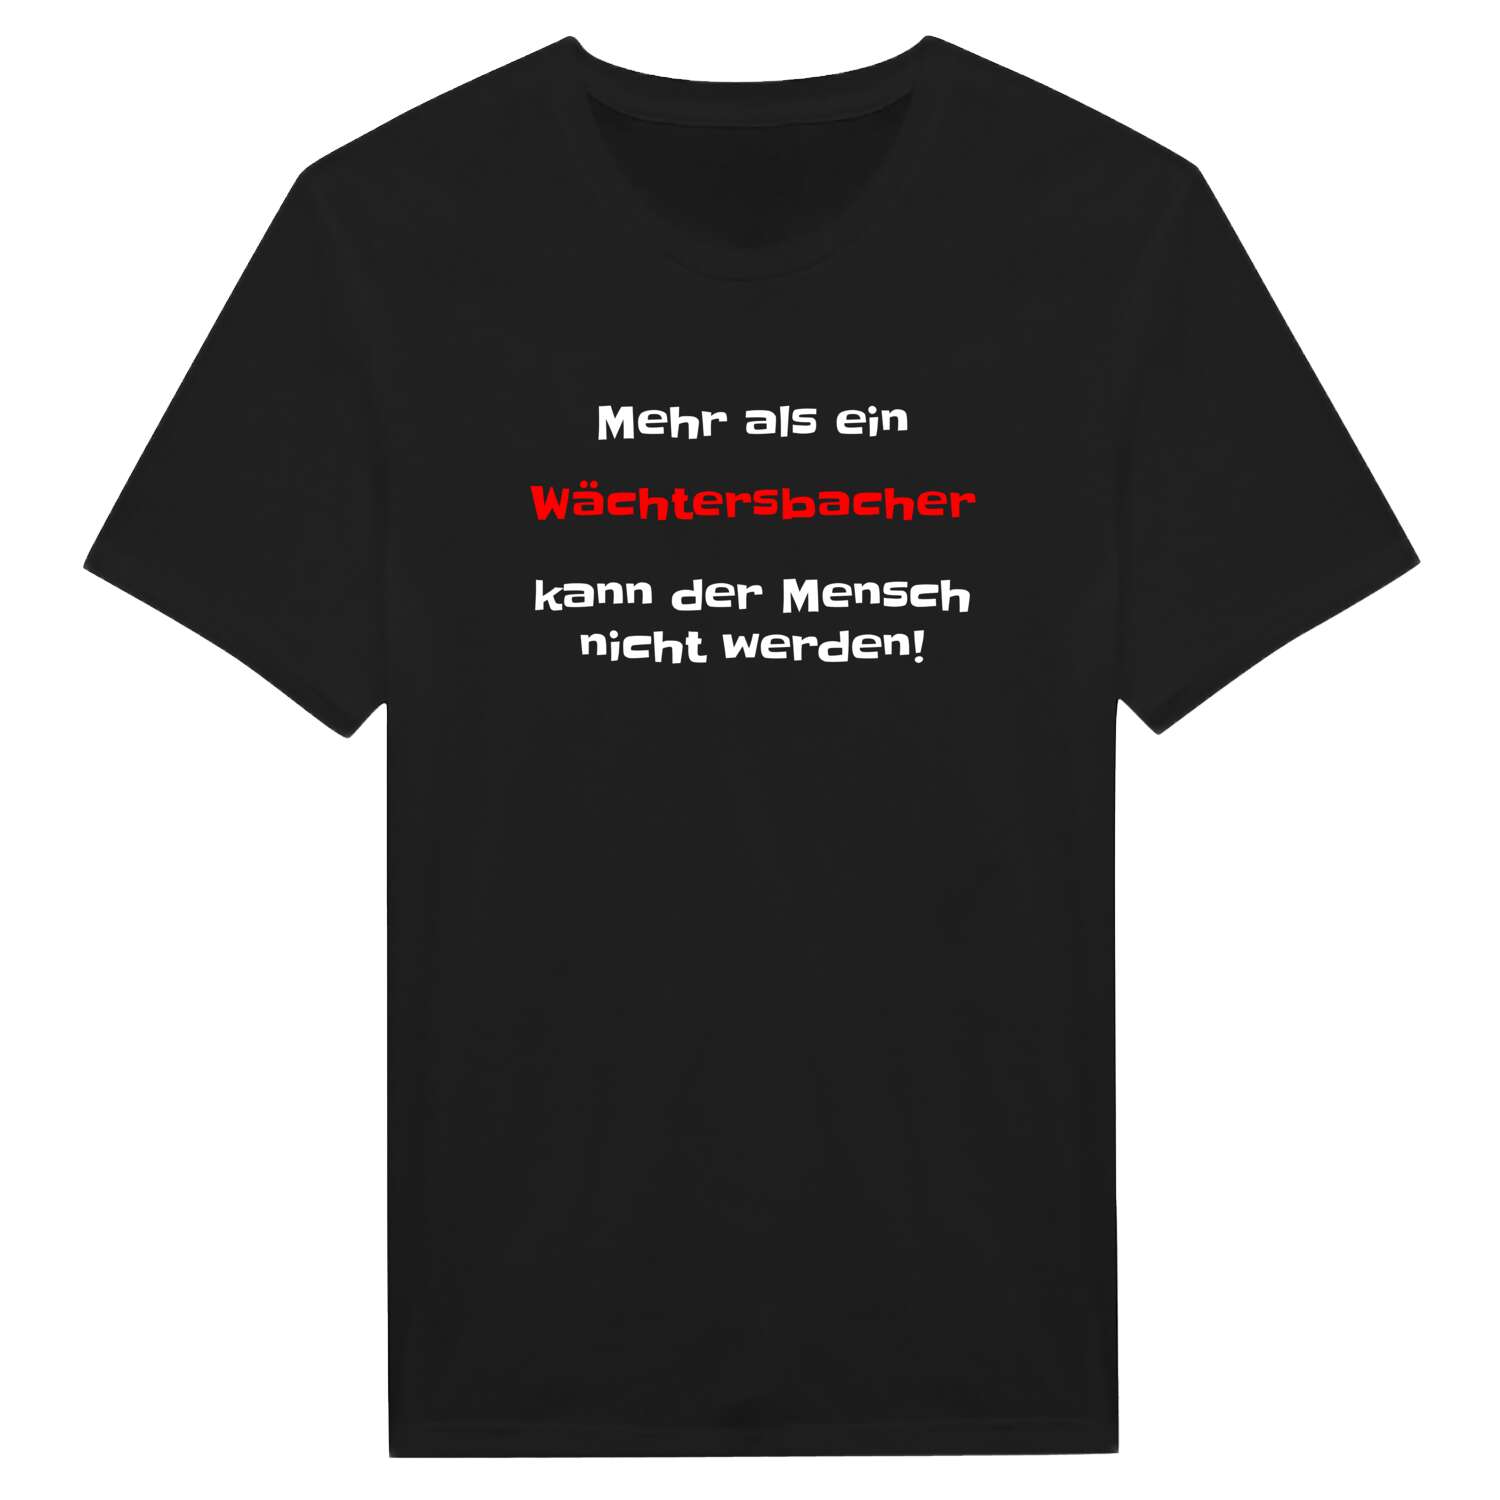 Wächtersbach T-Shirt »Mehr als ein«